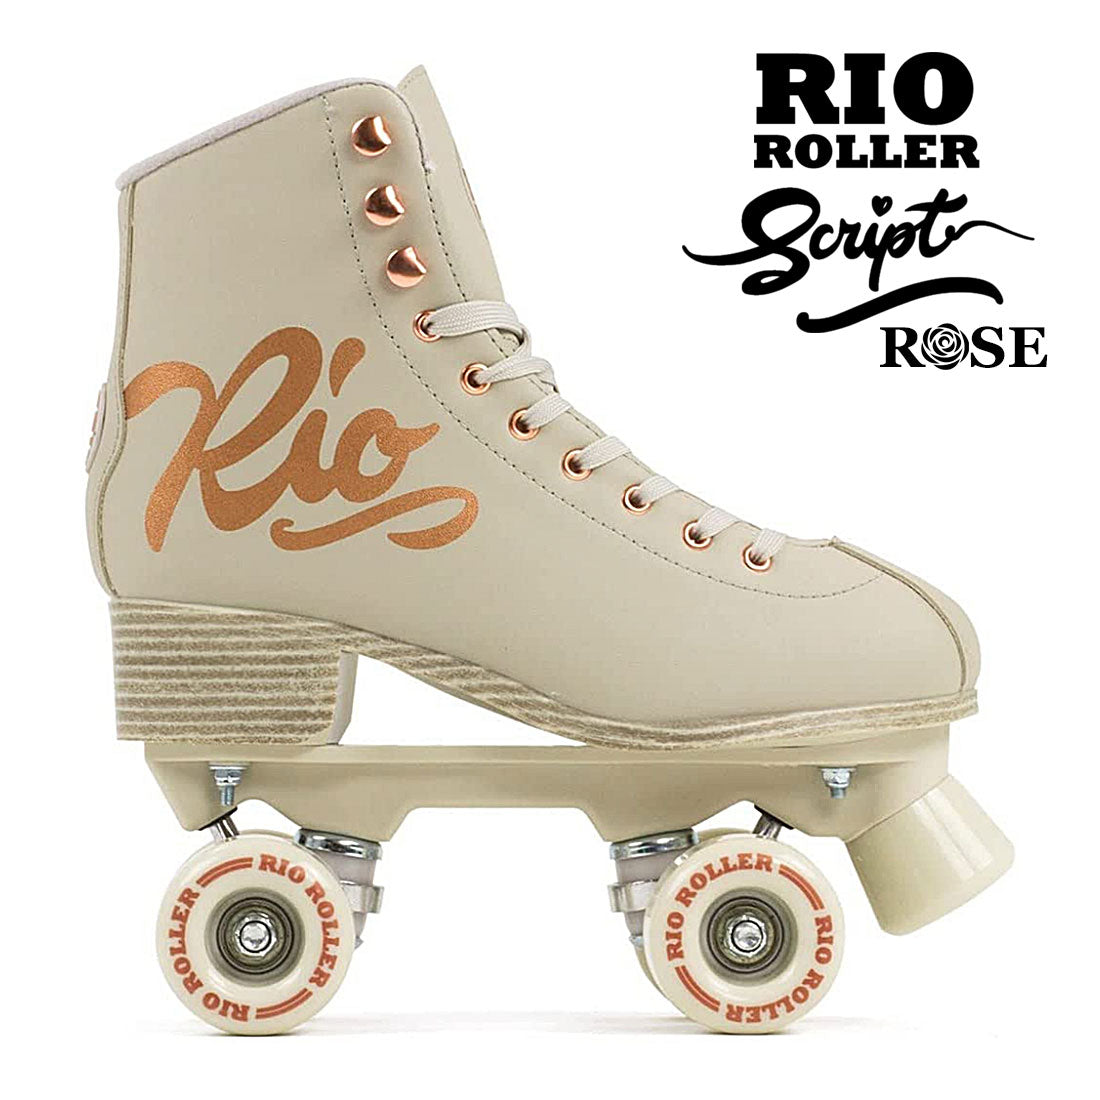 Rio Roller Script Rose - Cream Roller Skates